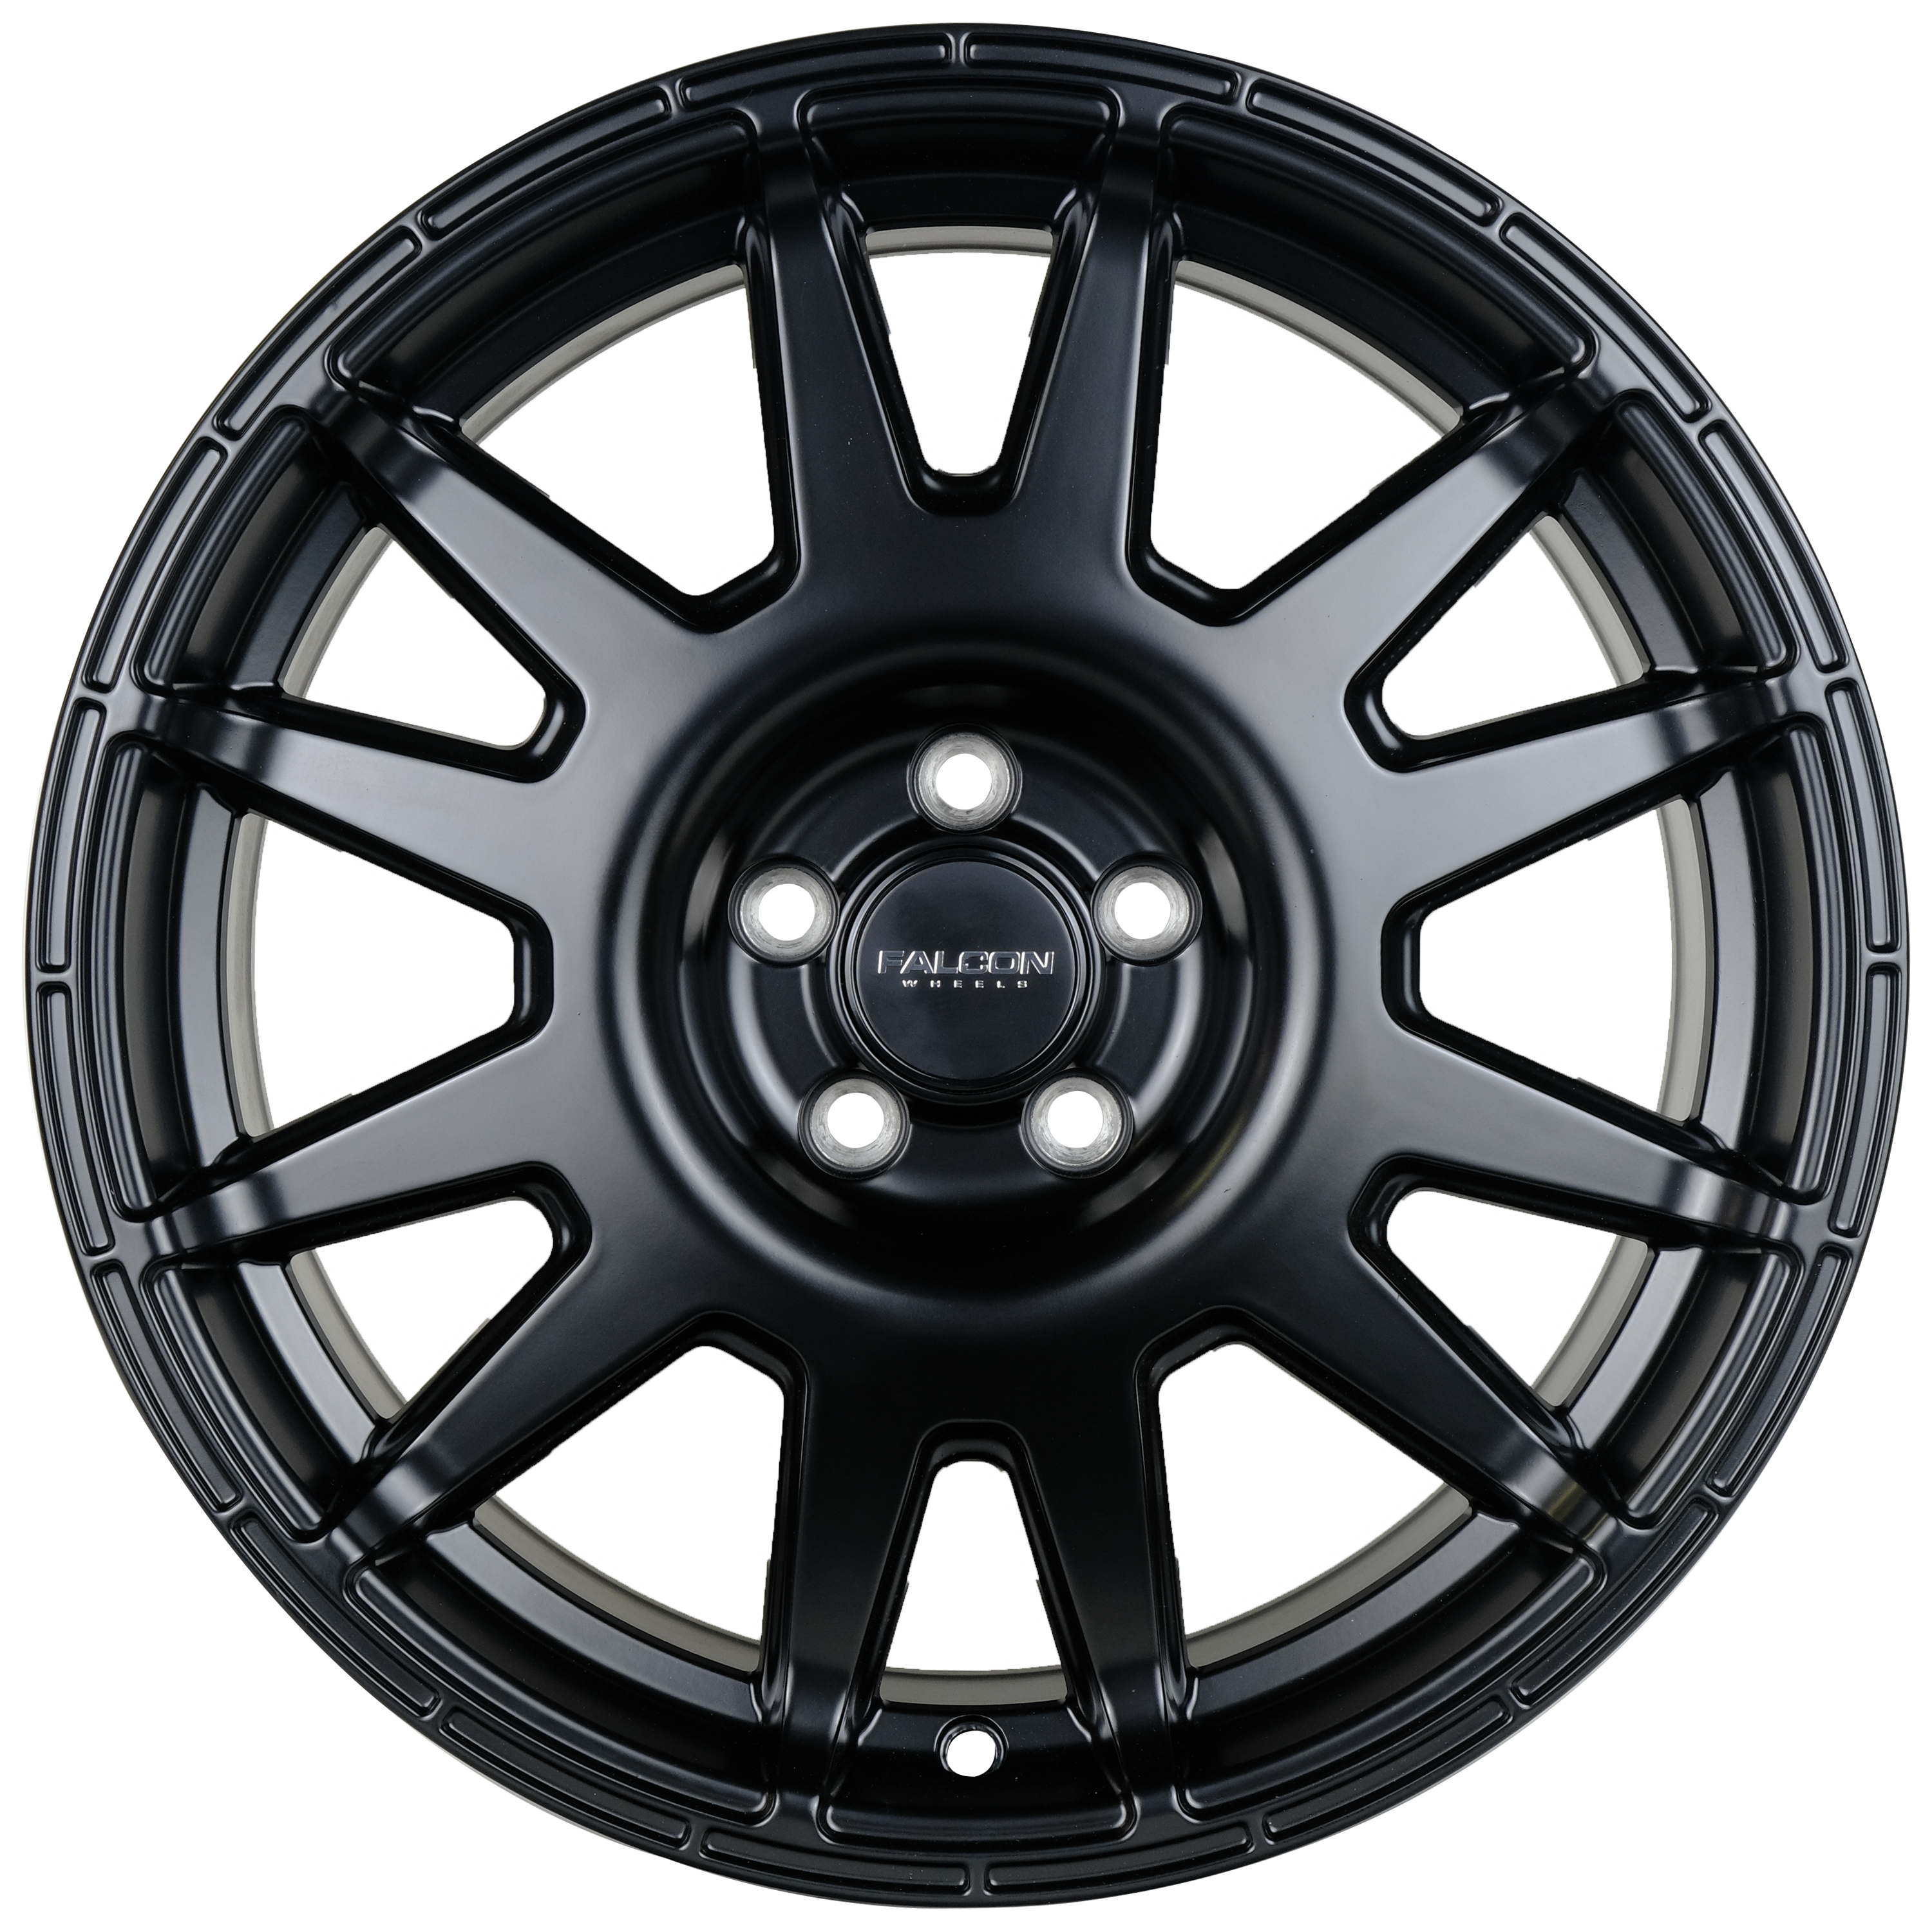 V2 - Matte Black 17x8 - Premium  from Falcon Off-Road Wheels - Just $240! Shop now at Falcon Off-Road Wheels 